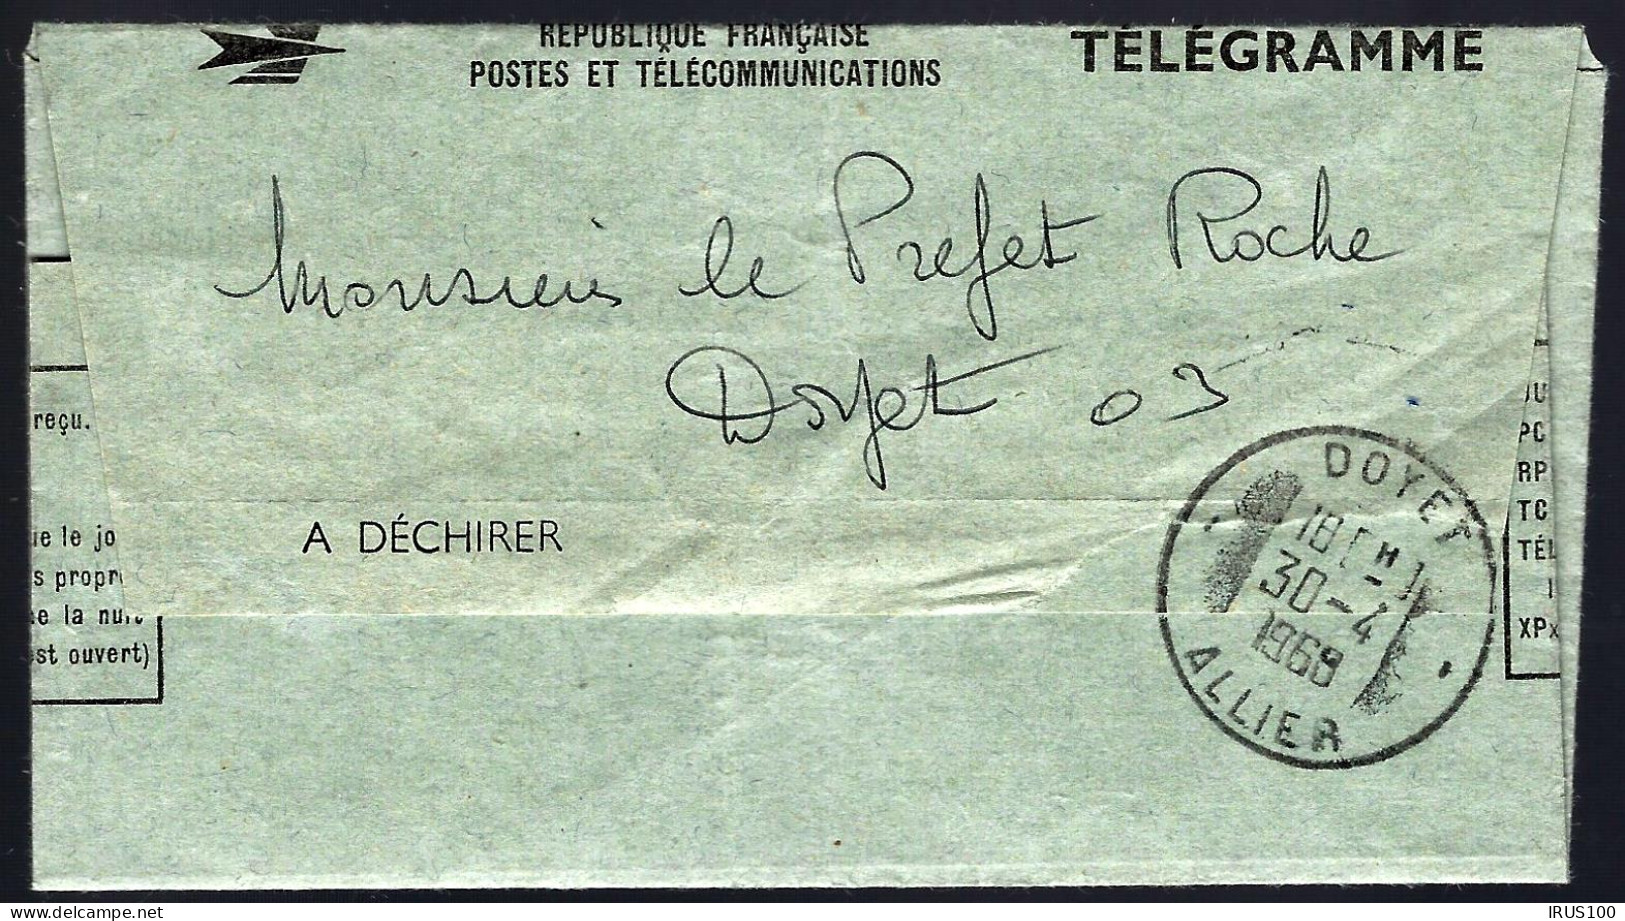 DOYET - 1968 - TÉLÉGRAMME - IMPOSSIBLE DE ME DÉPLACER CE SOIR  - Telegraph And Telephone